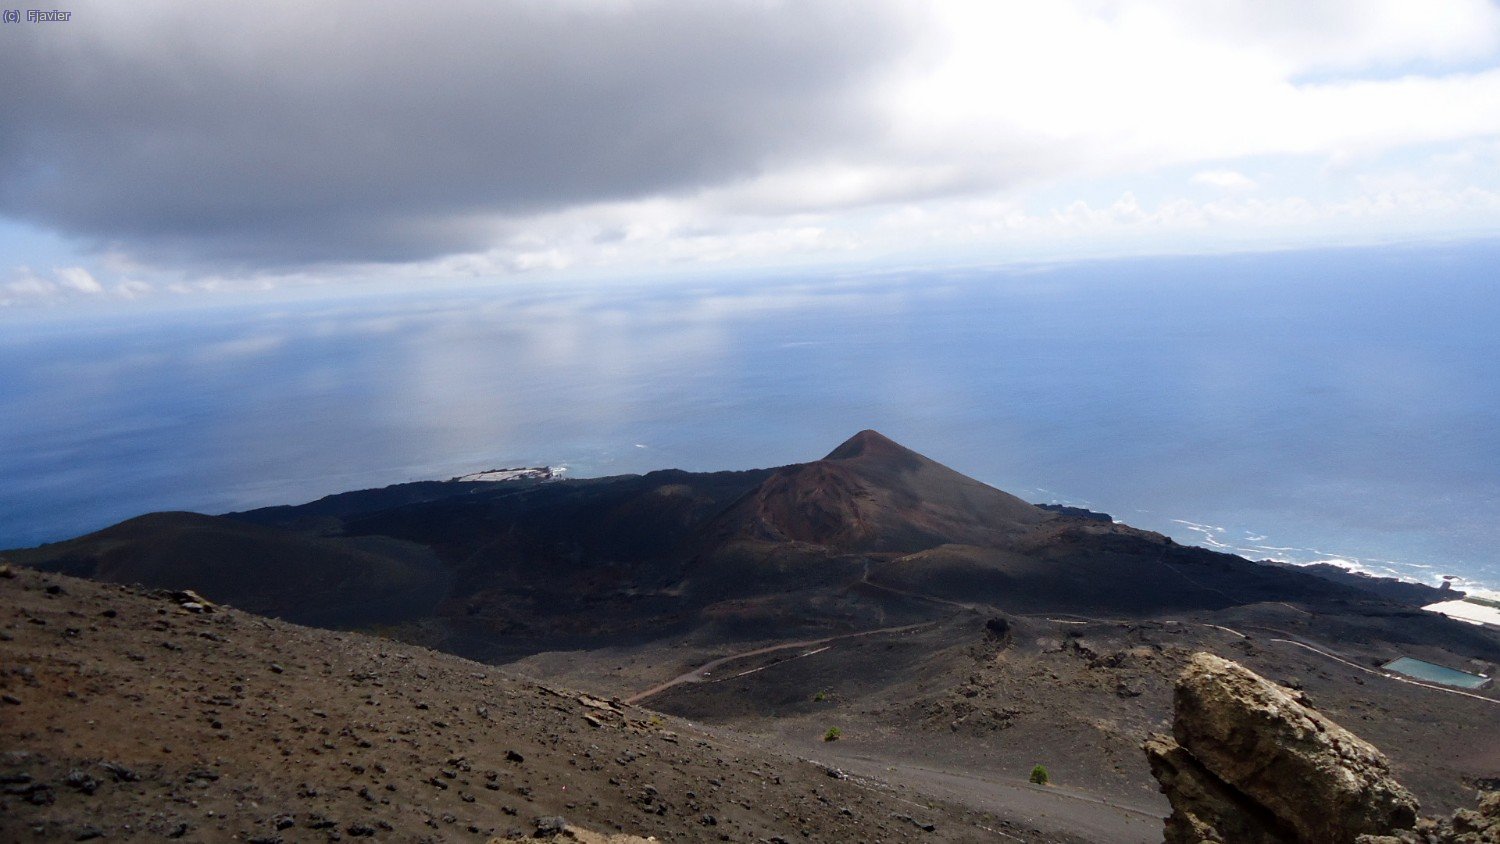 El darrer volcà de la ruta, el Teneguía; darrera erupció terrestre a Espanya (1.971).